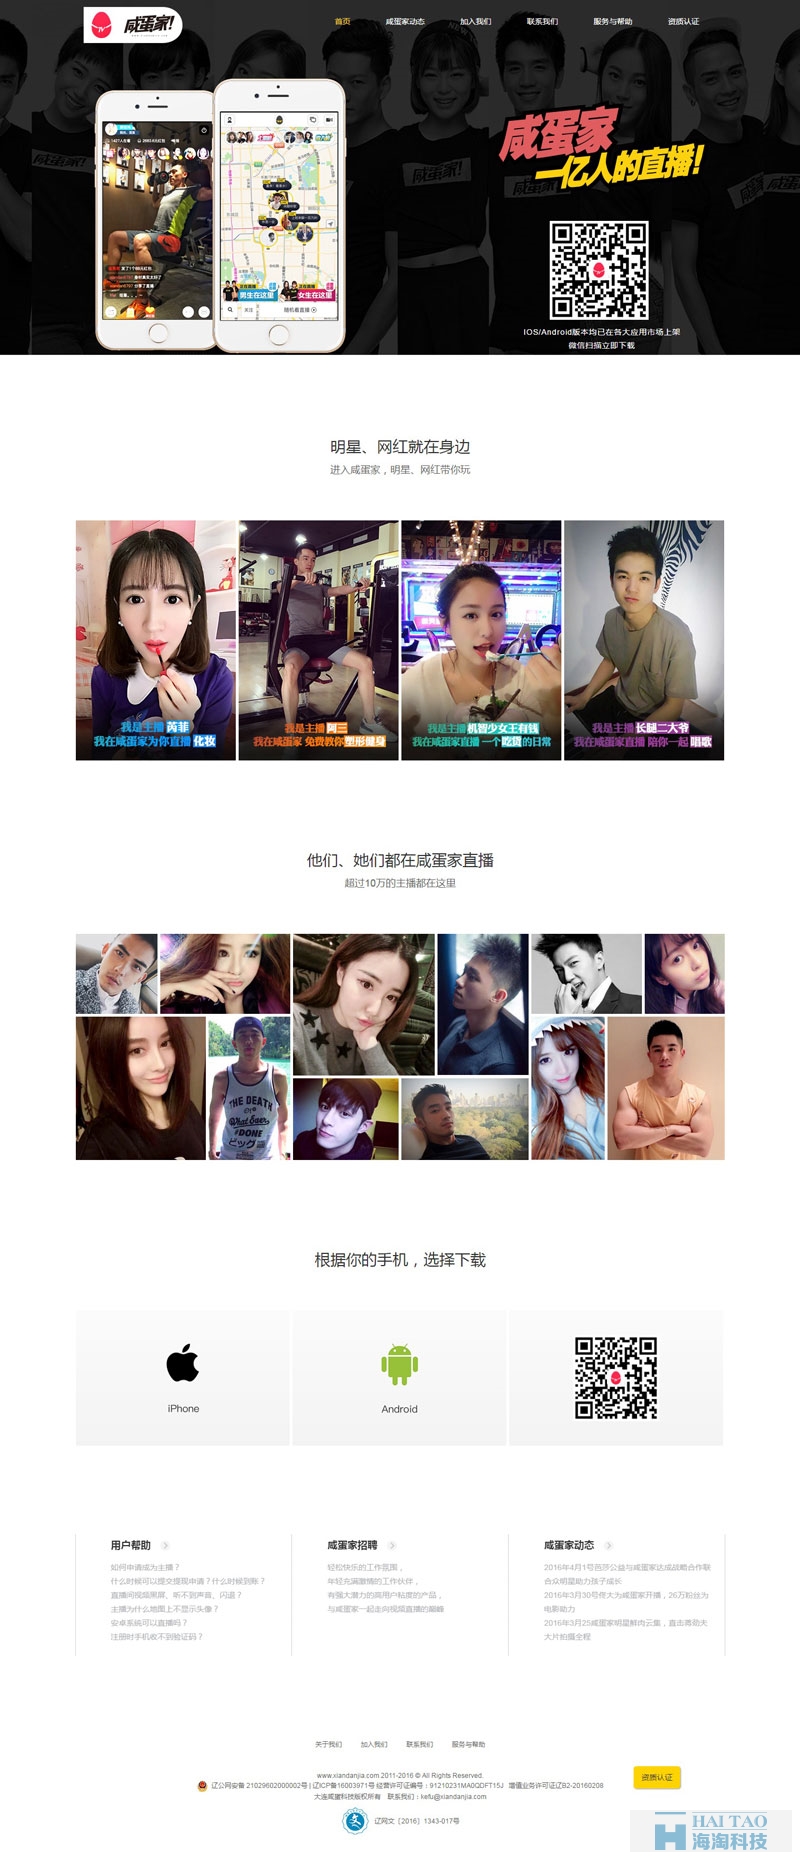 咸蛋家社交网站制作案例,上海建立社交网站公司案例,社交网站成功构建案例